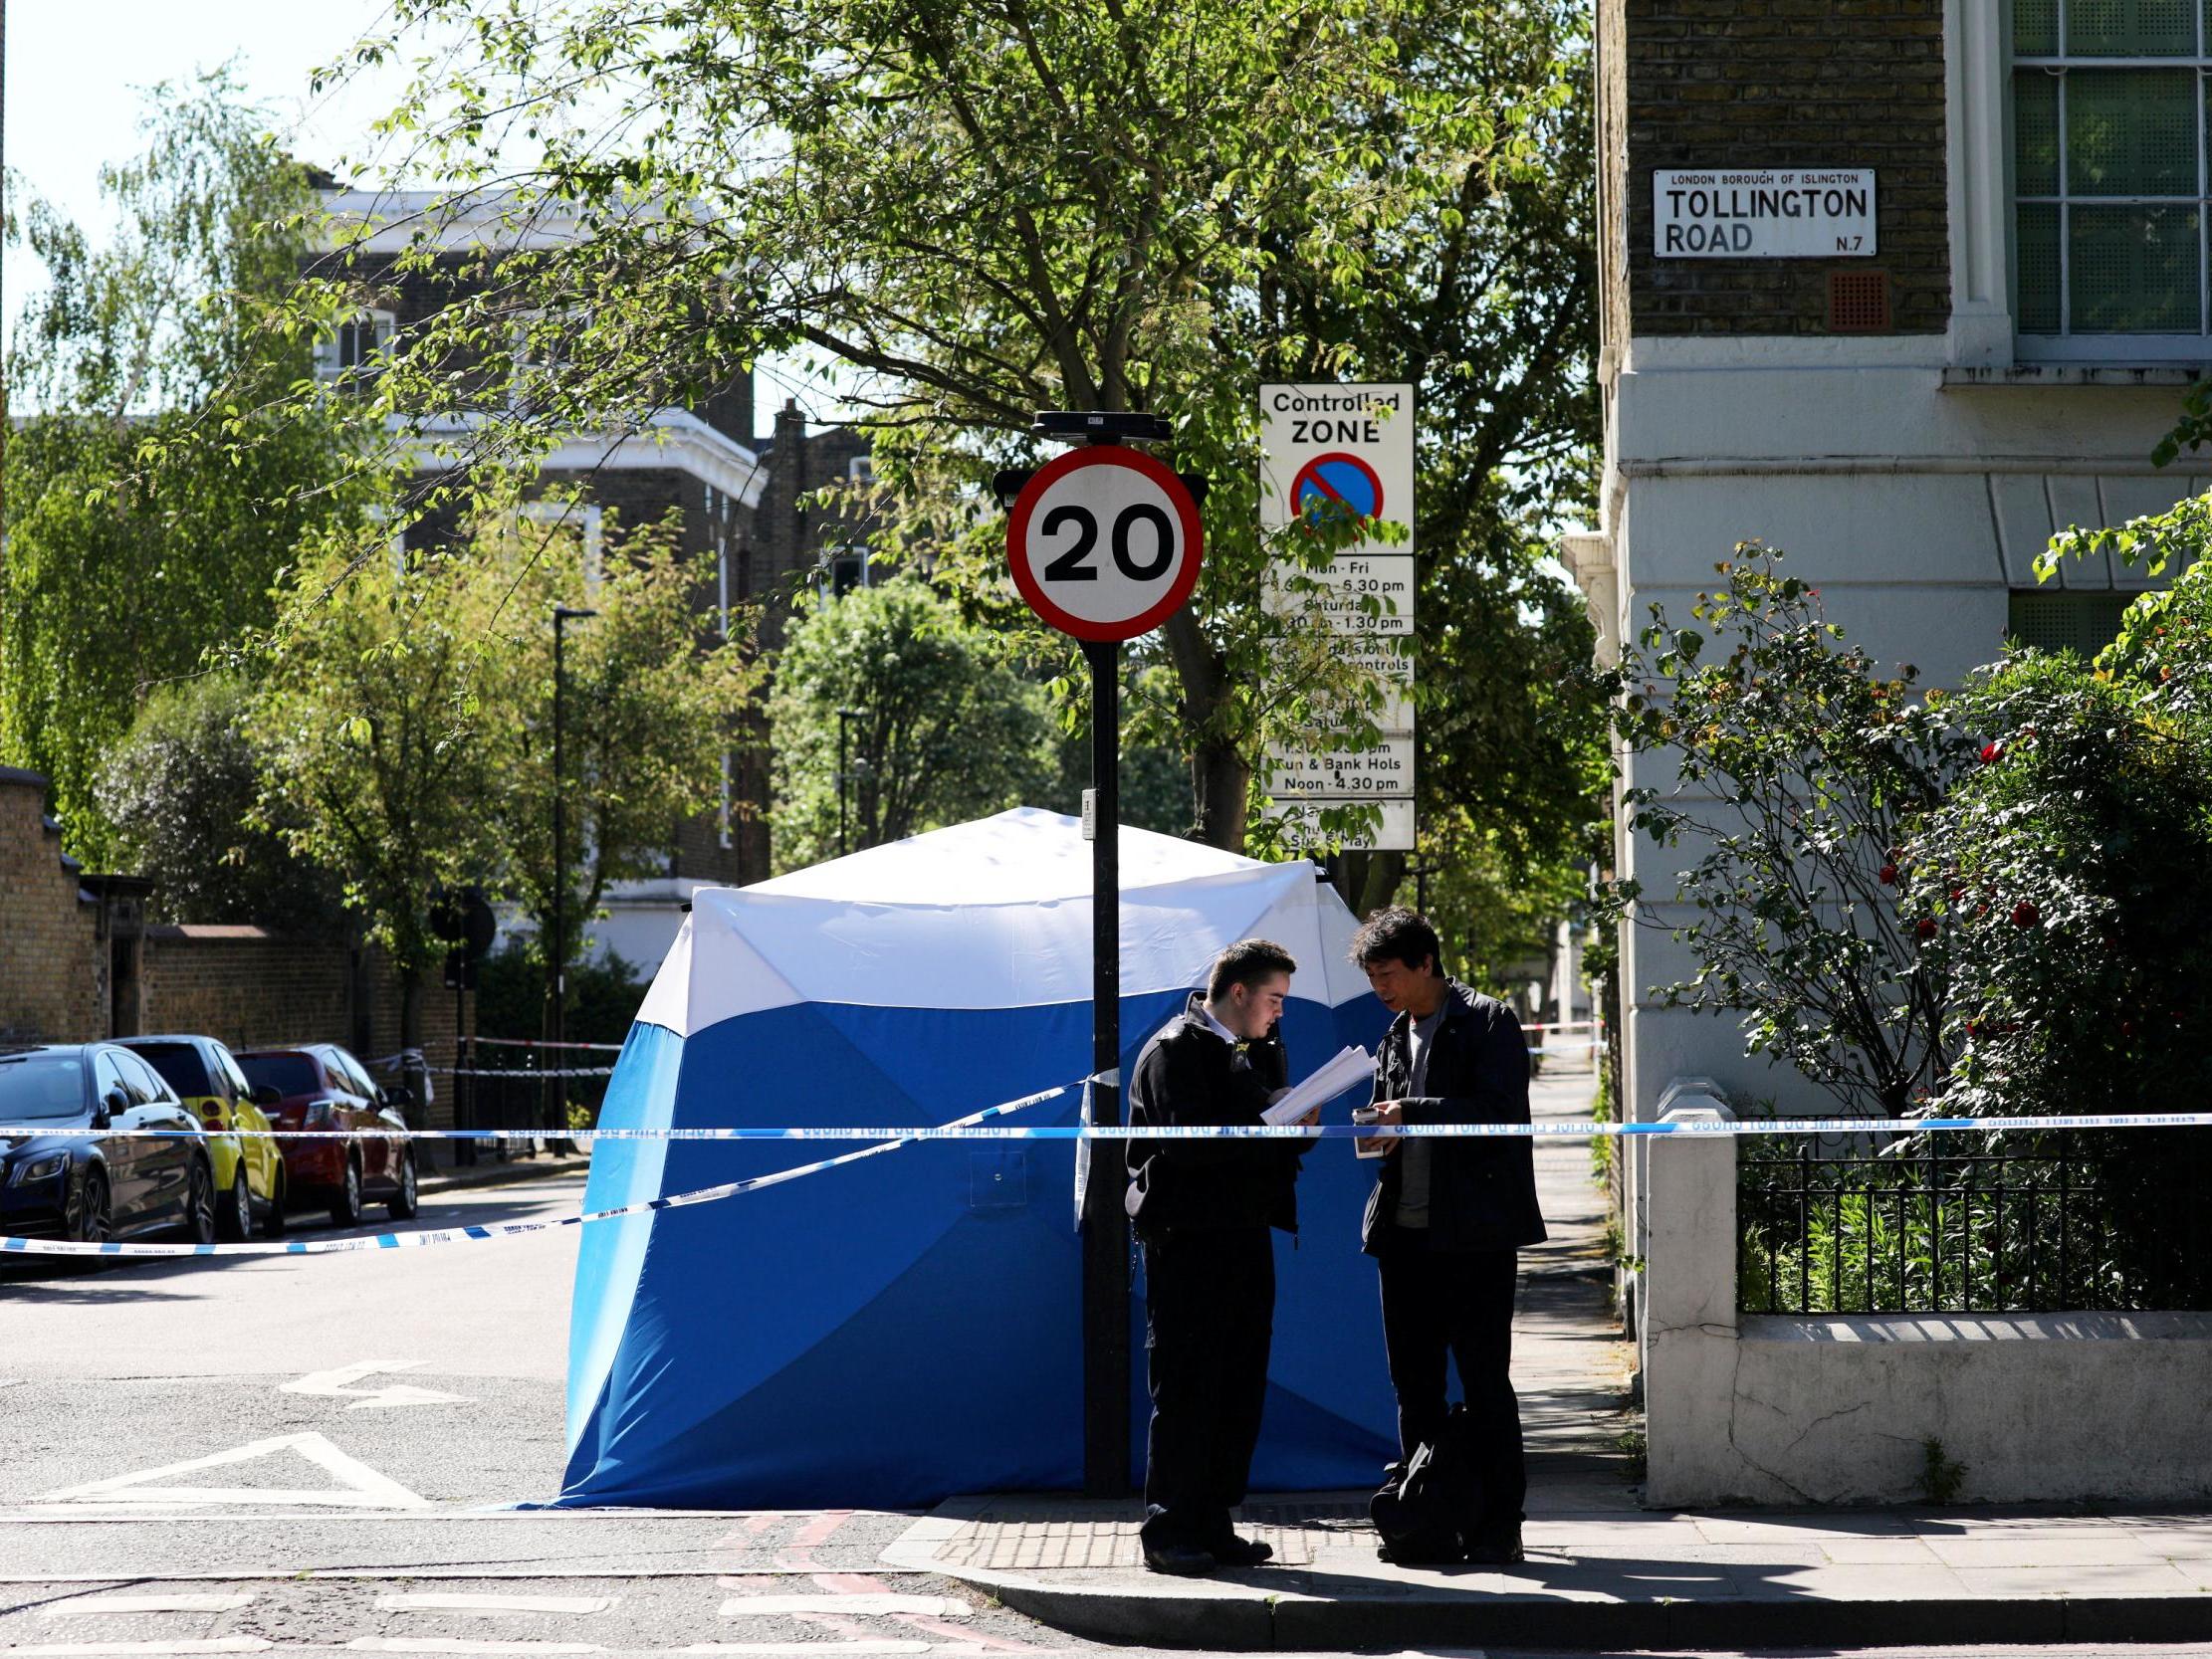 A man's body was found in a wheelie bin in Tollington Road, Islington